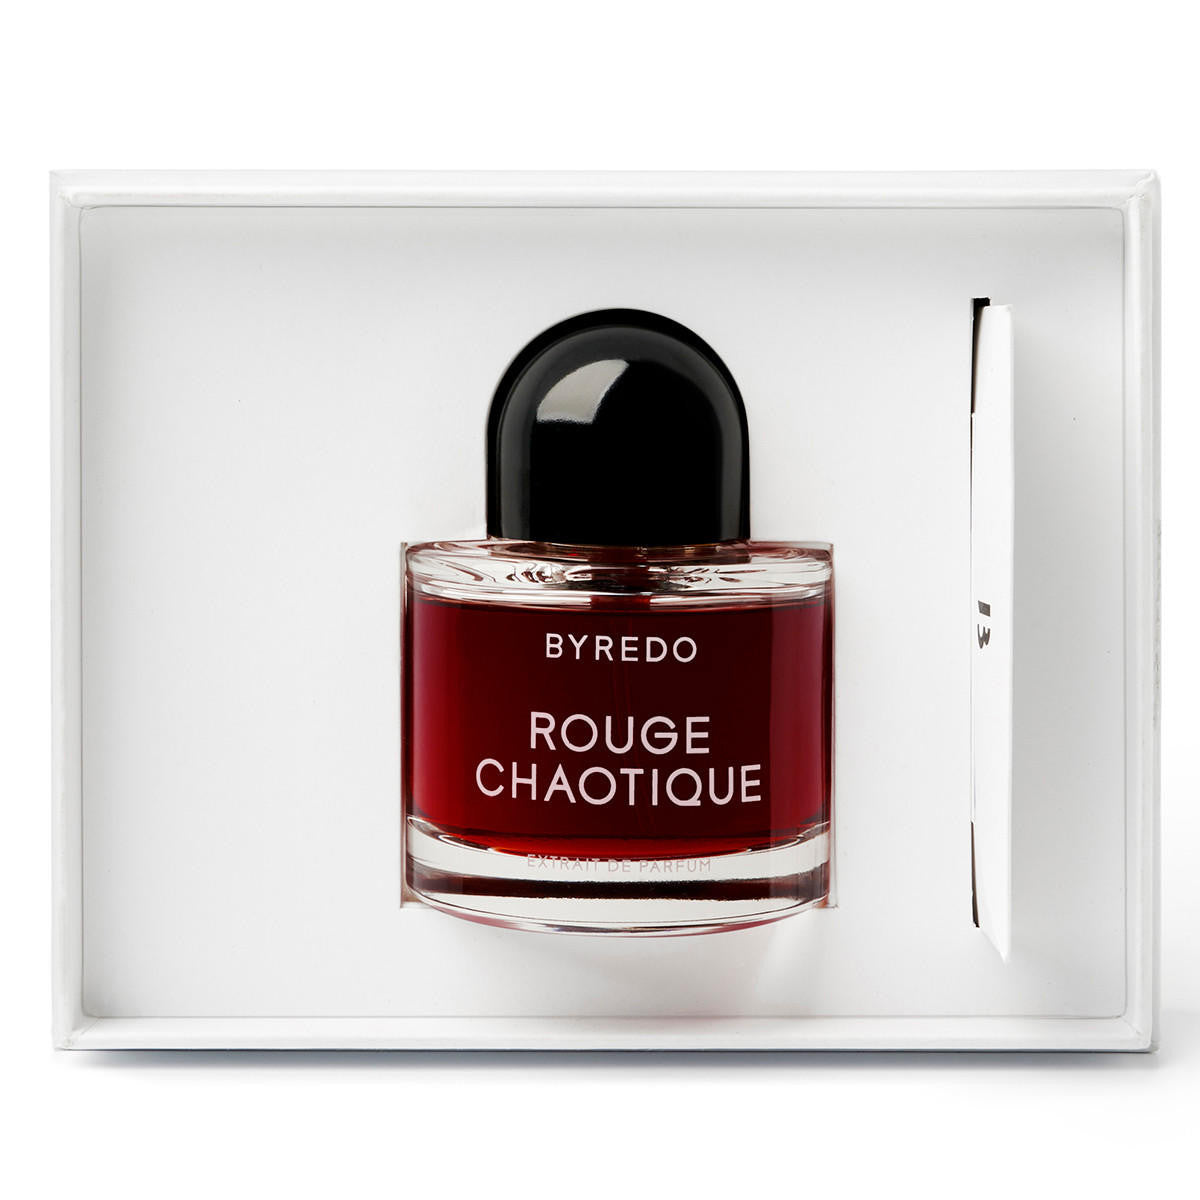  BYREDO Rouge Chaotique Extrait de Parfum 